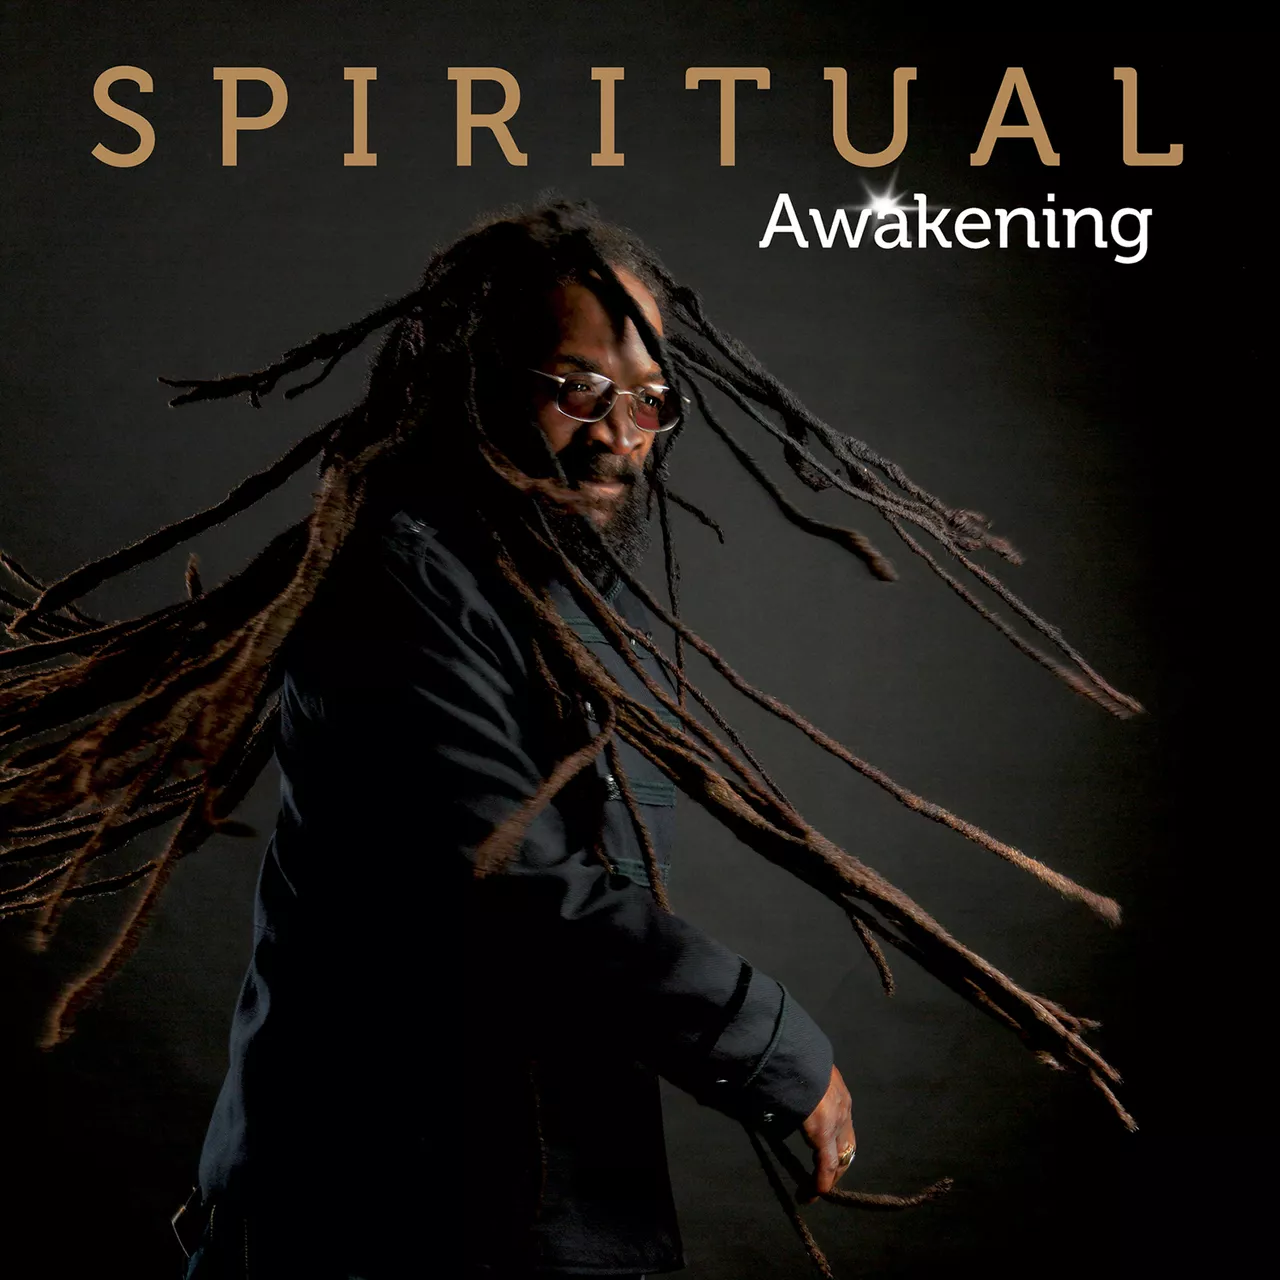 Spirituel roots reggae af bedste skuffe